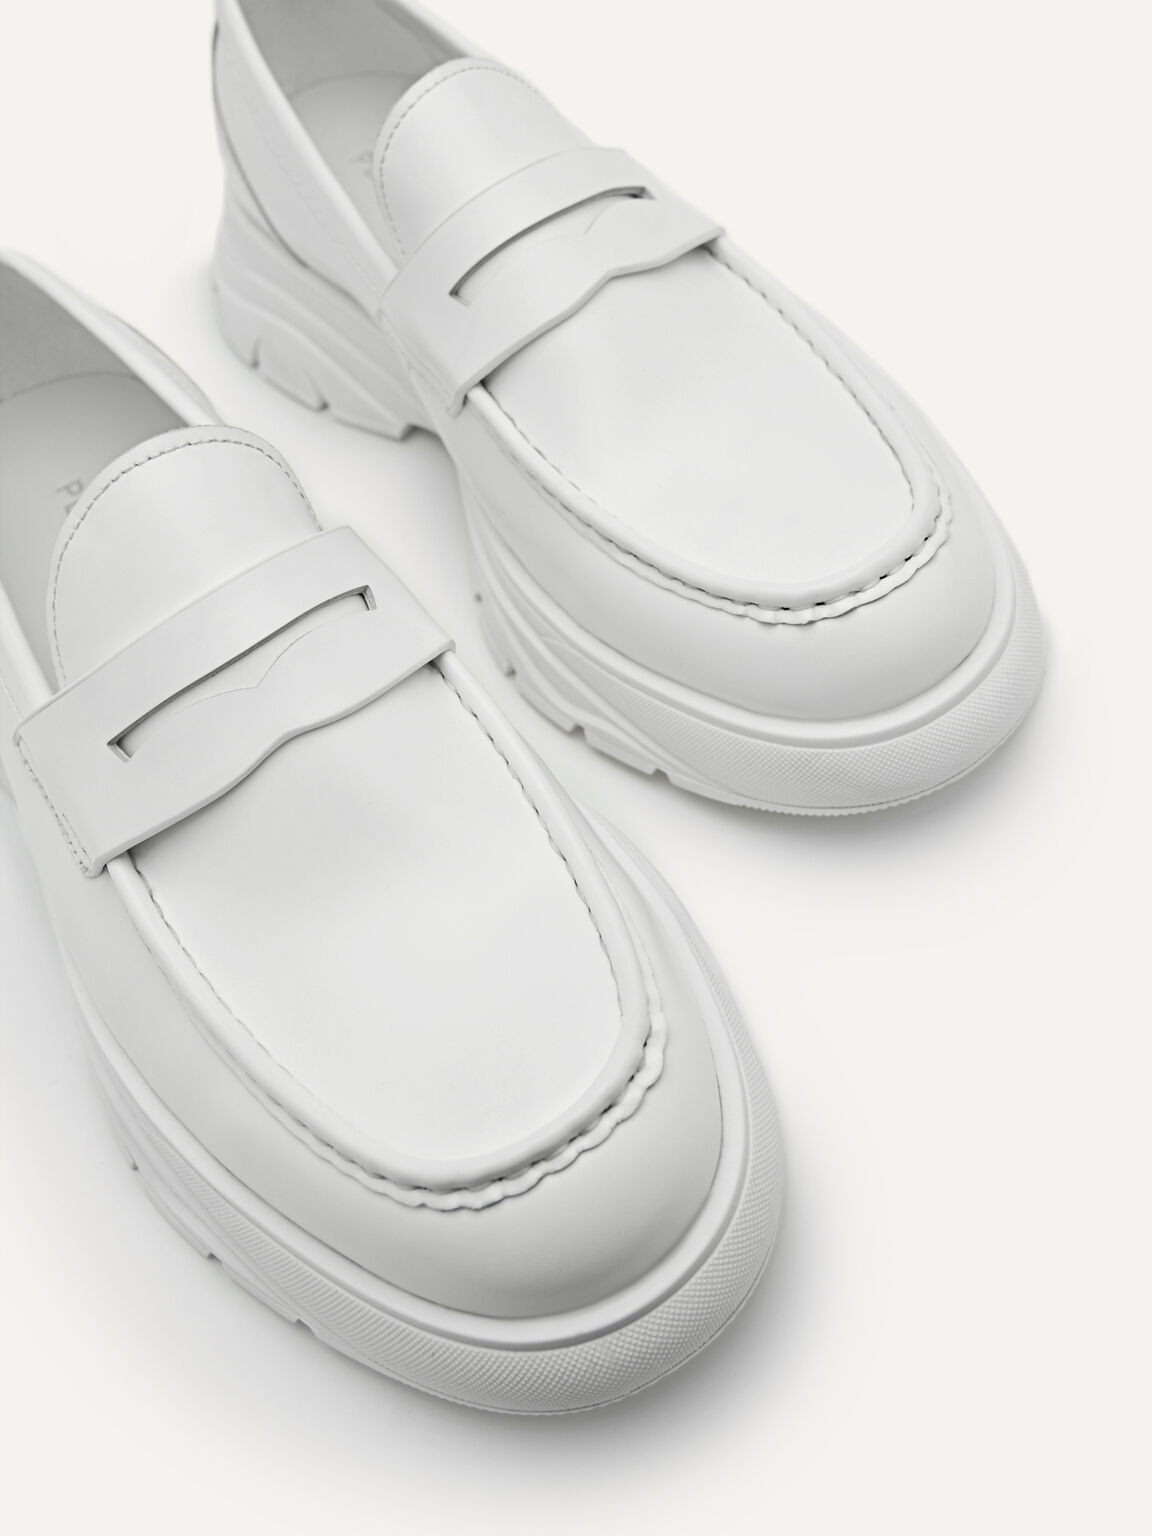 Hybrix皮革便士樂福鞋, 白色